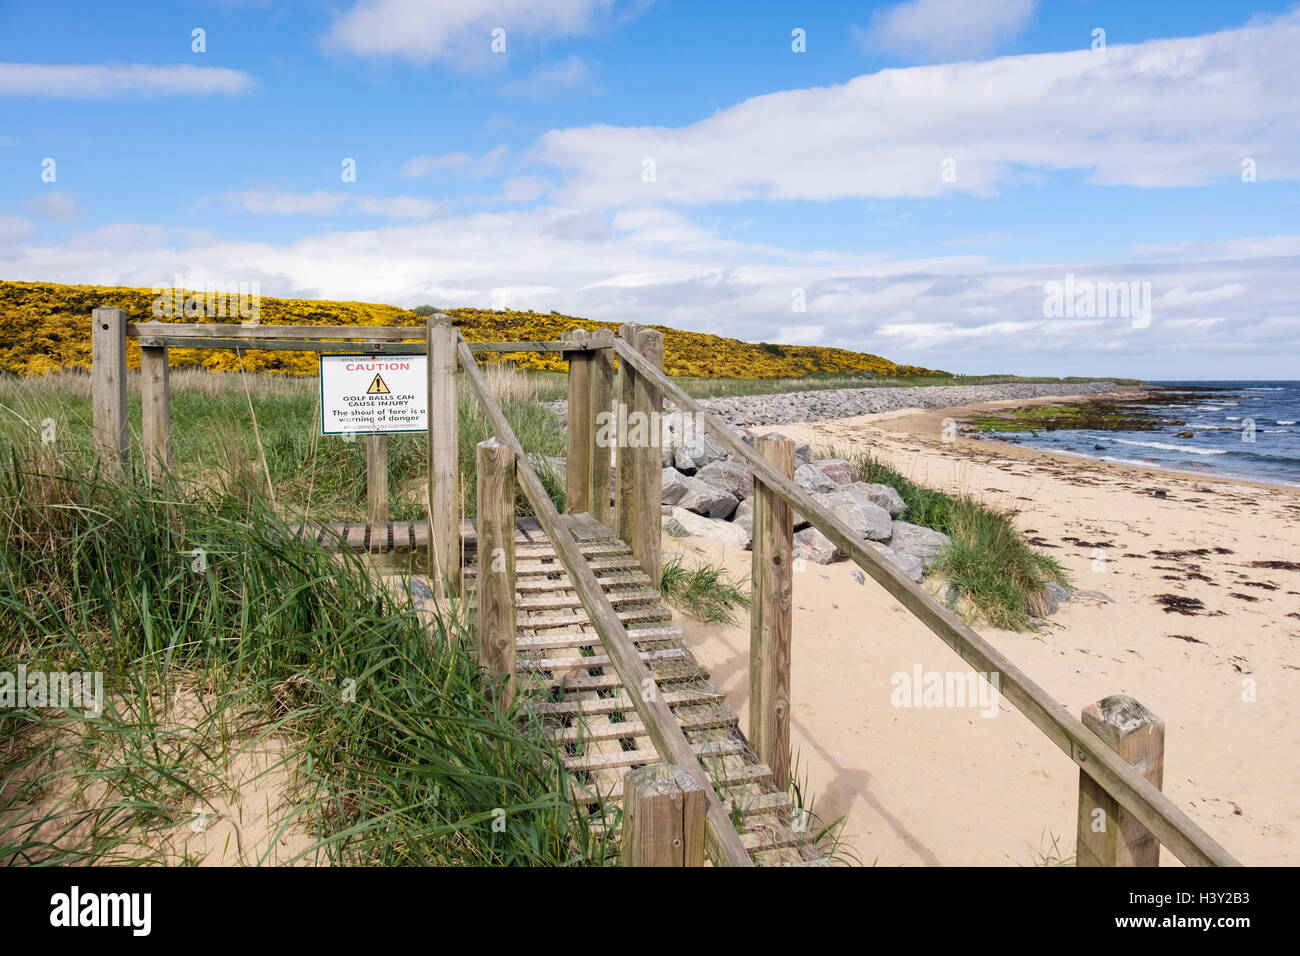 Vorsicht Zeichen Achtung Wanderer auf Fußweg Rampe vom Strand zum Royal Dornoch Golf Club. Dornoch Sutherland Highland, Schottland, Vereinigtes Königreich Stockfoto